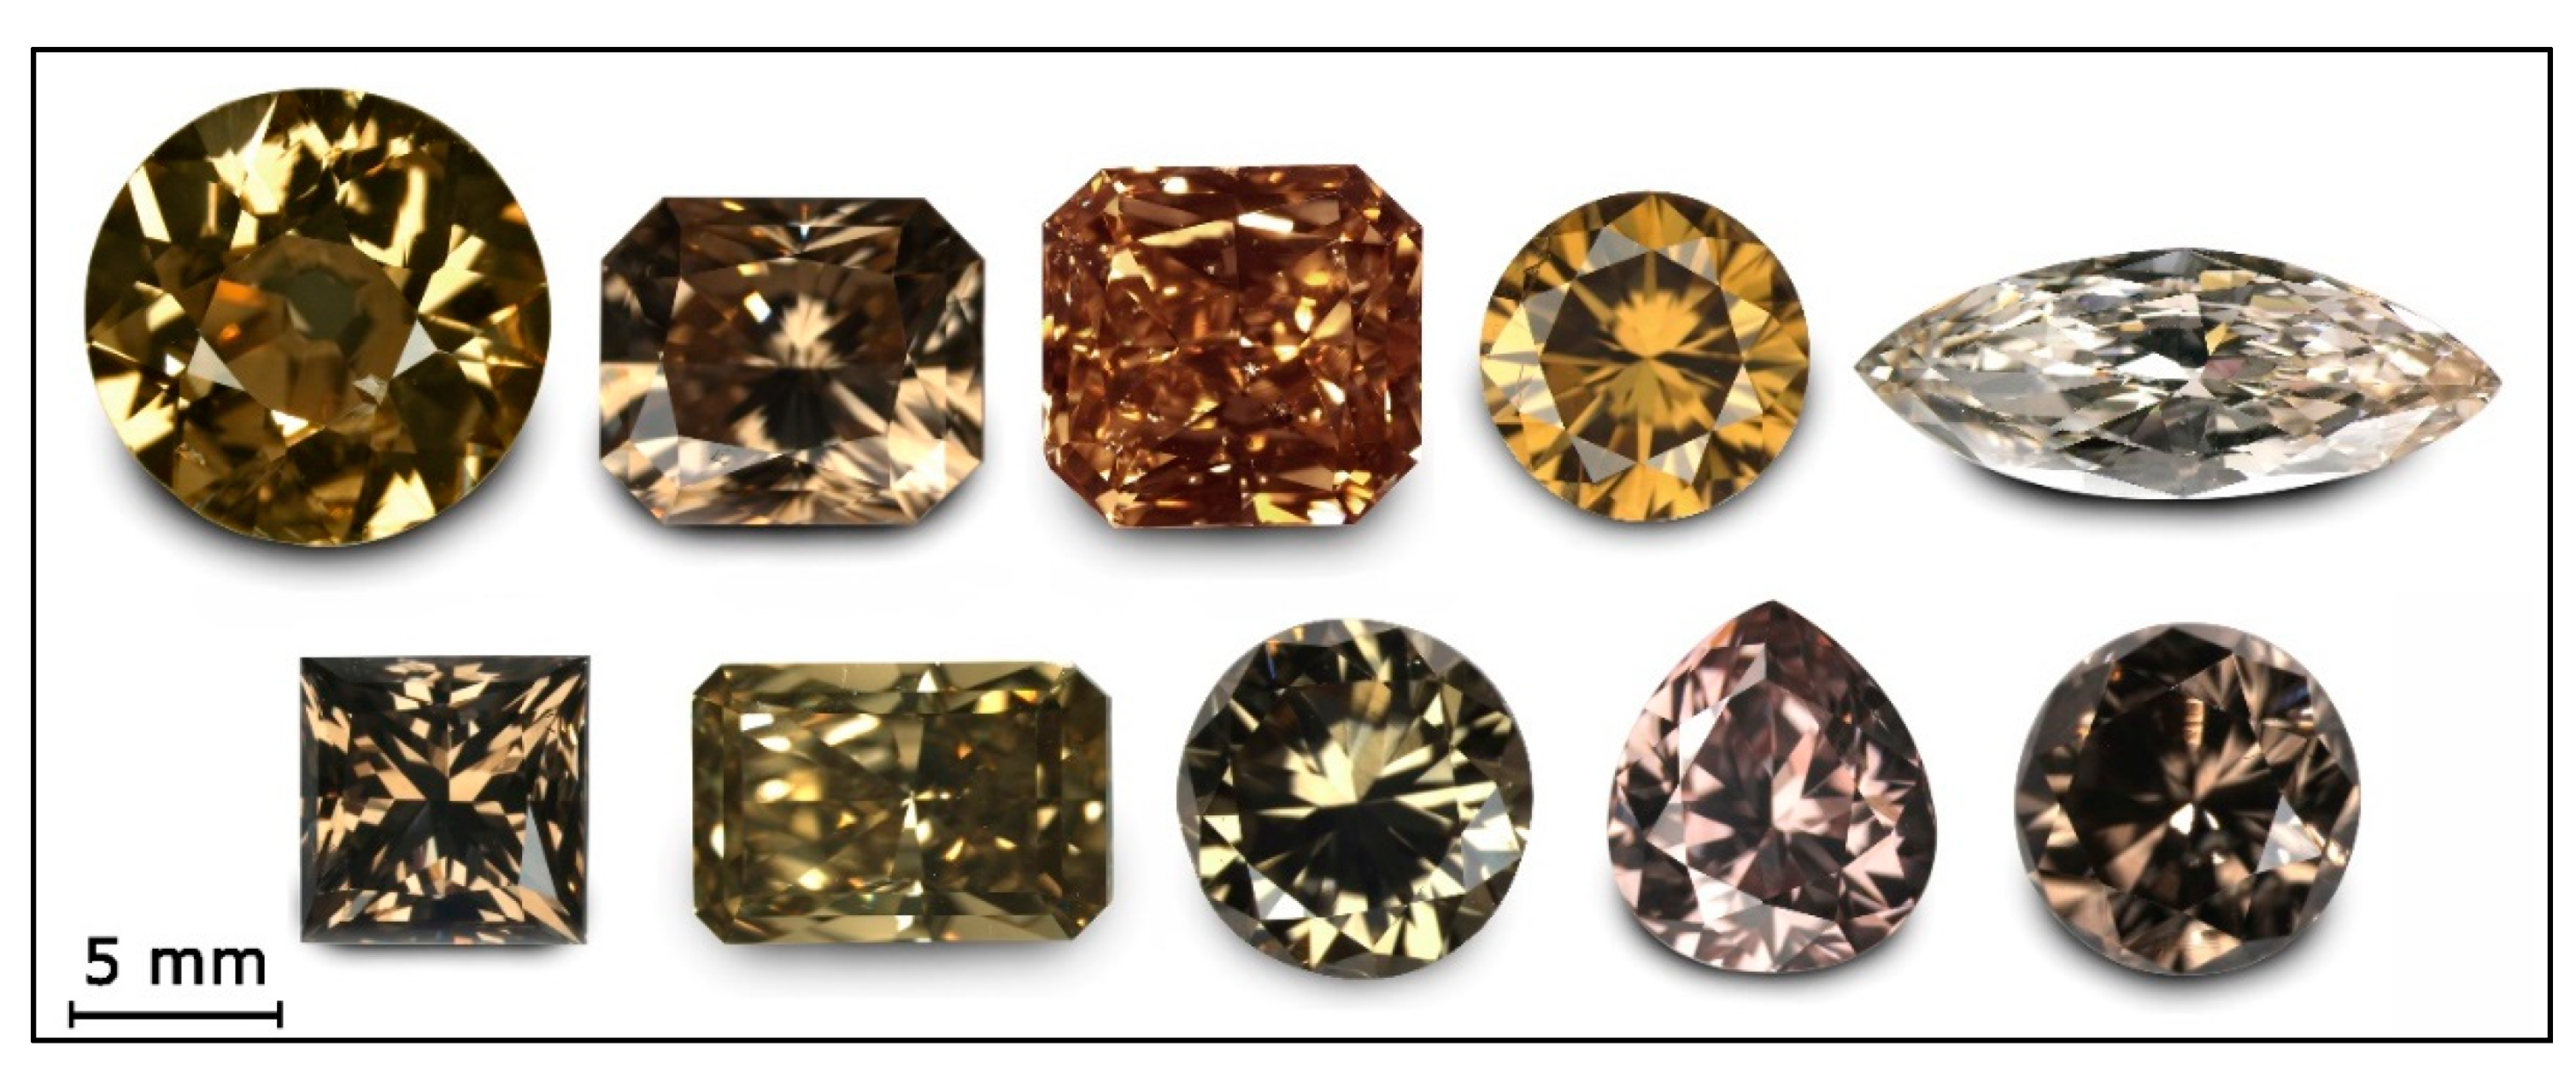 رایج ترین رنگ های الماس کدام است؟